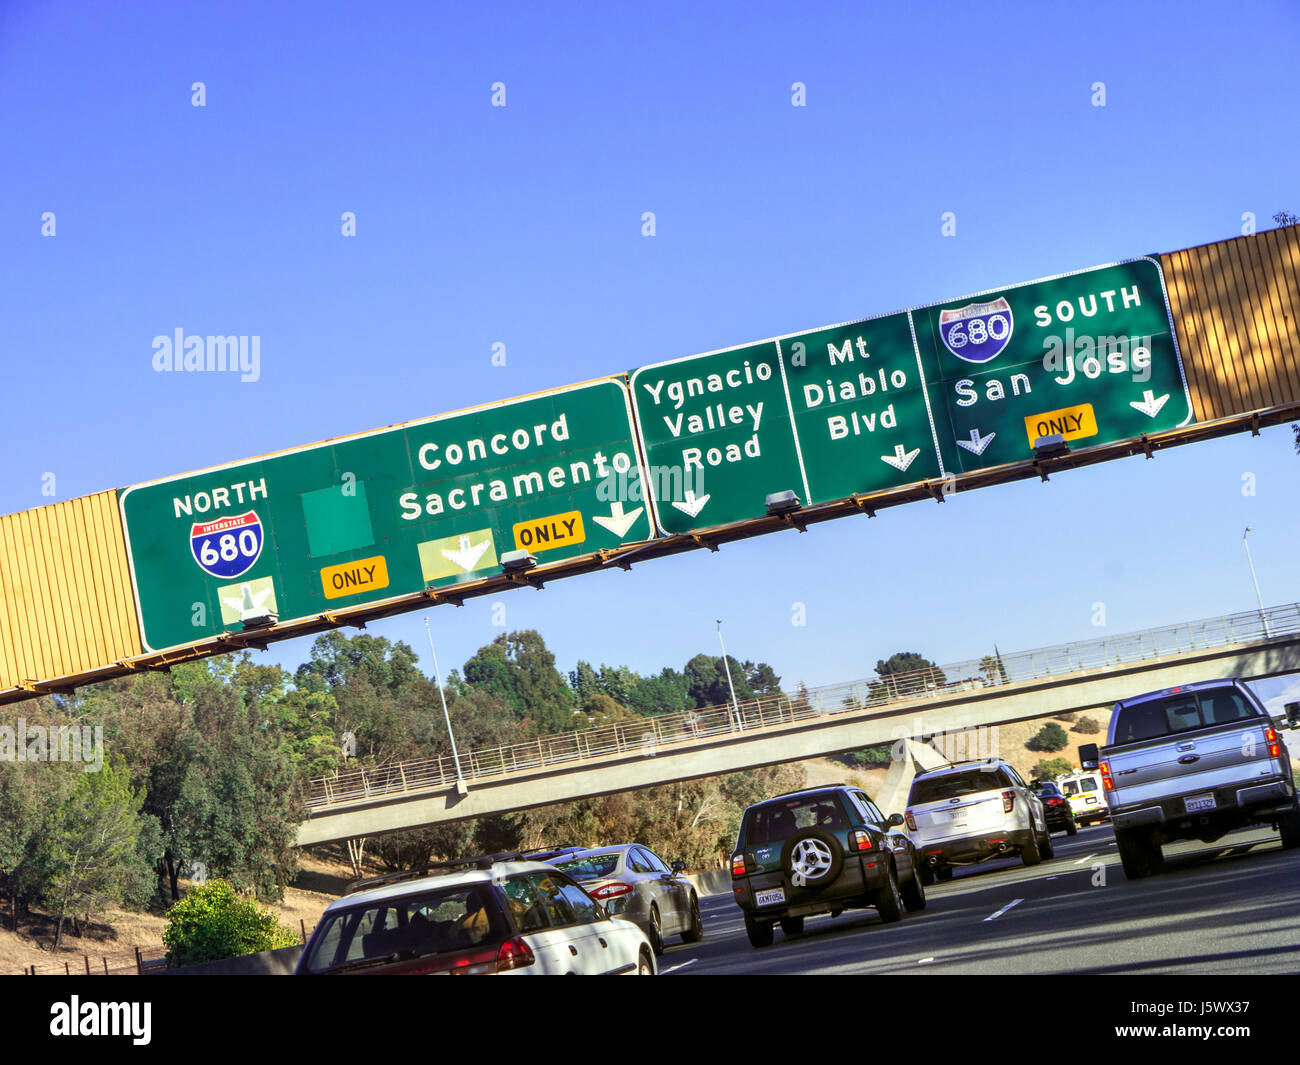 I-680- traffico pendolari sulla Interstate 680 passando sotto la direzione del gantry segni in direzione nord fino a Concord/Sacramento o a sud di San Jose California USA Foto Stock